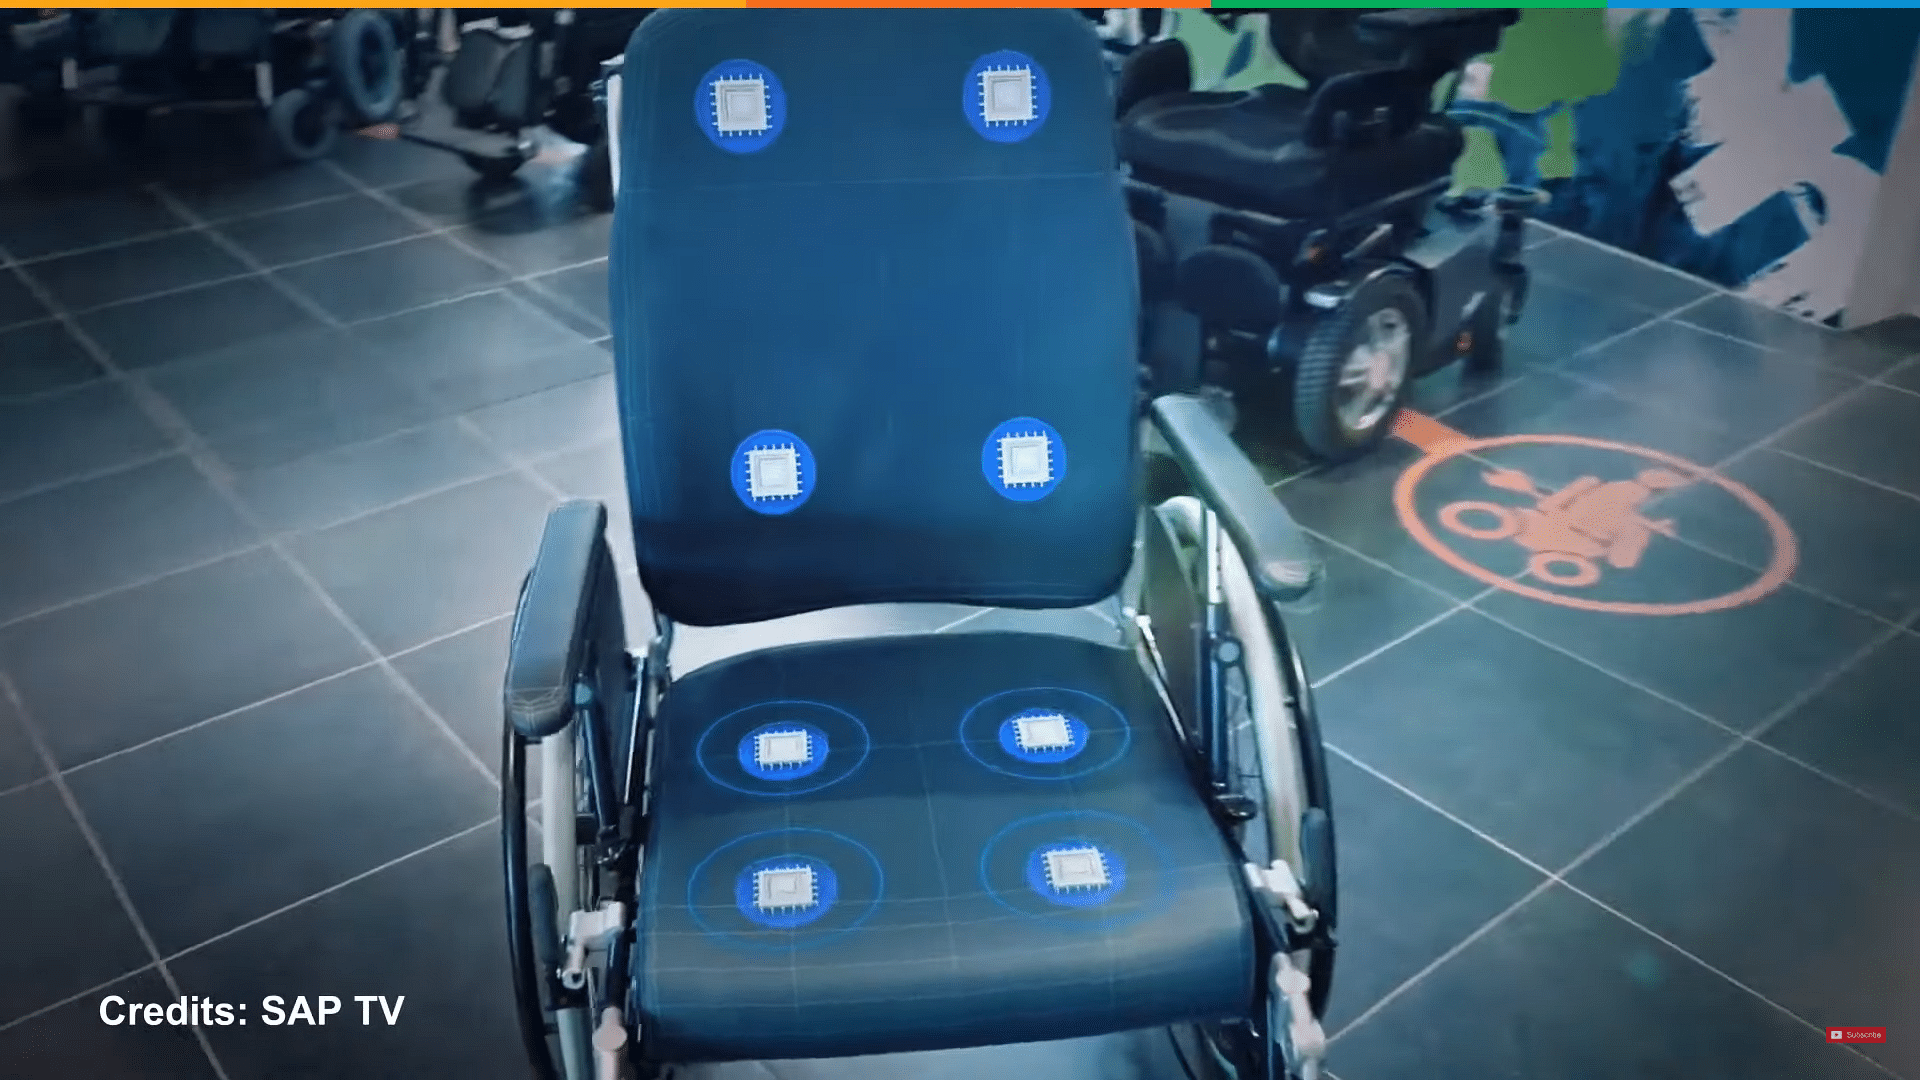 智能轮椅